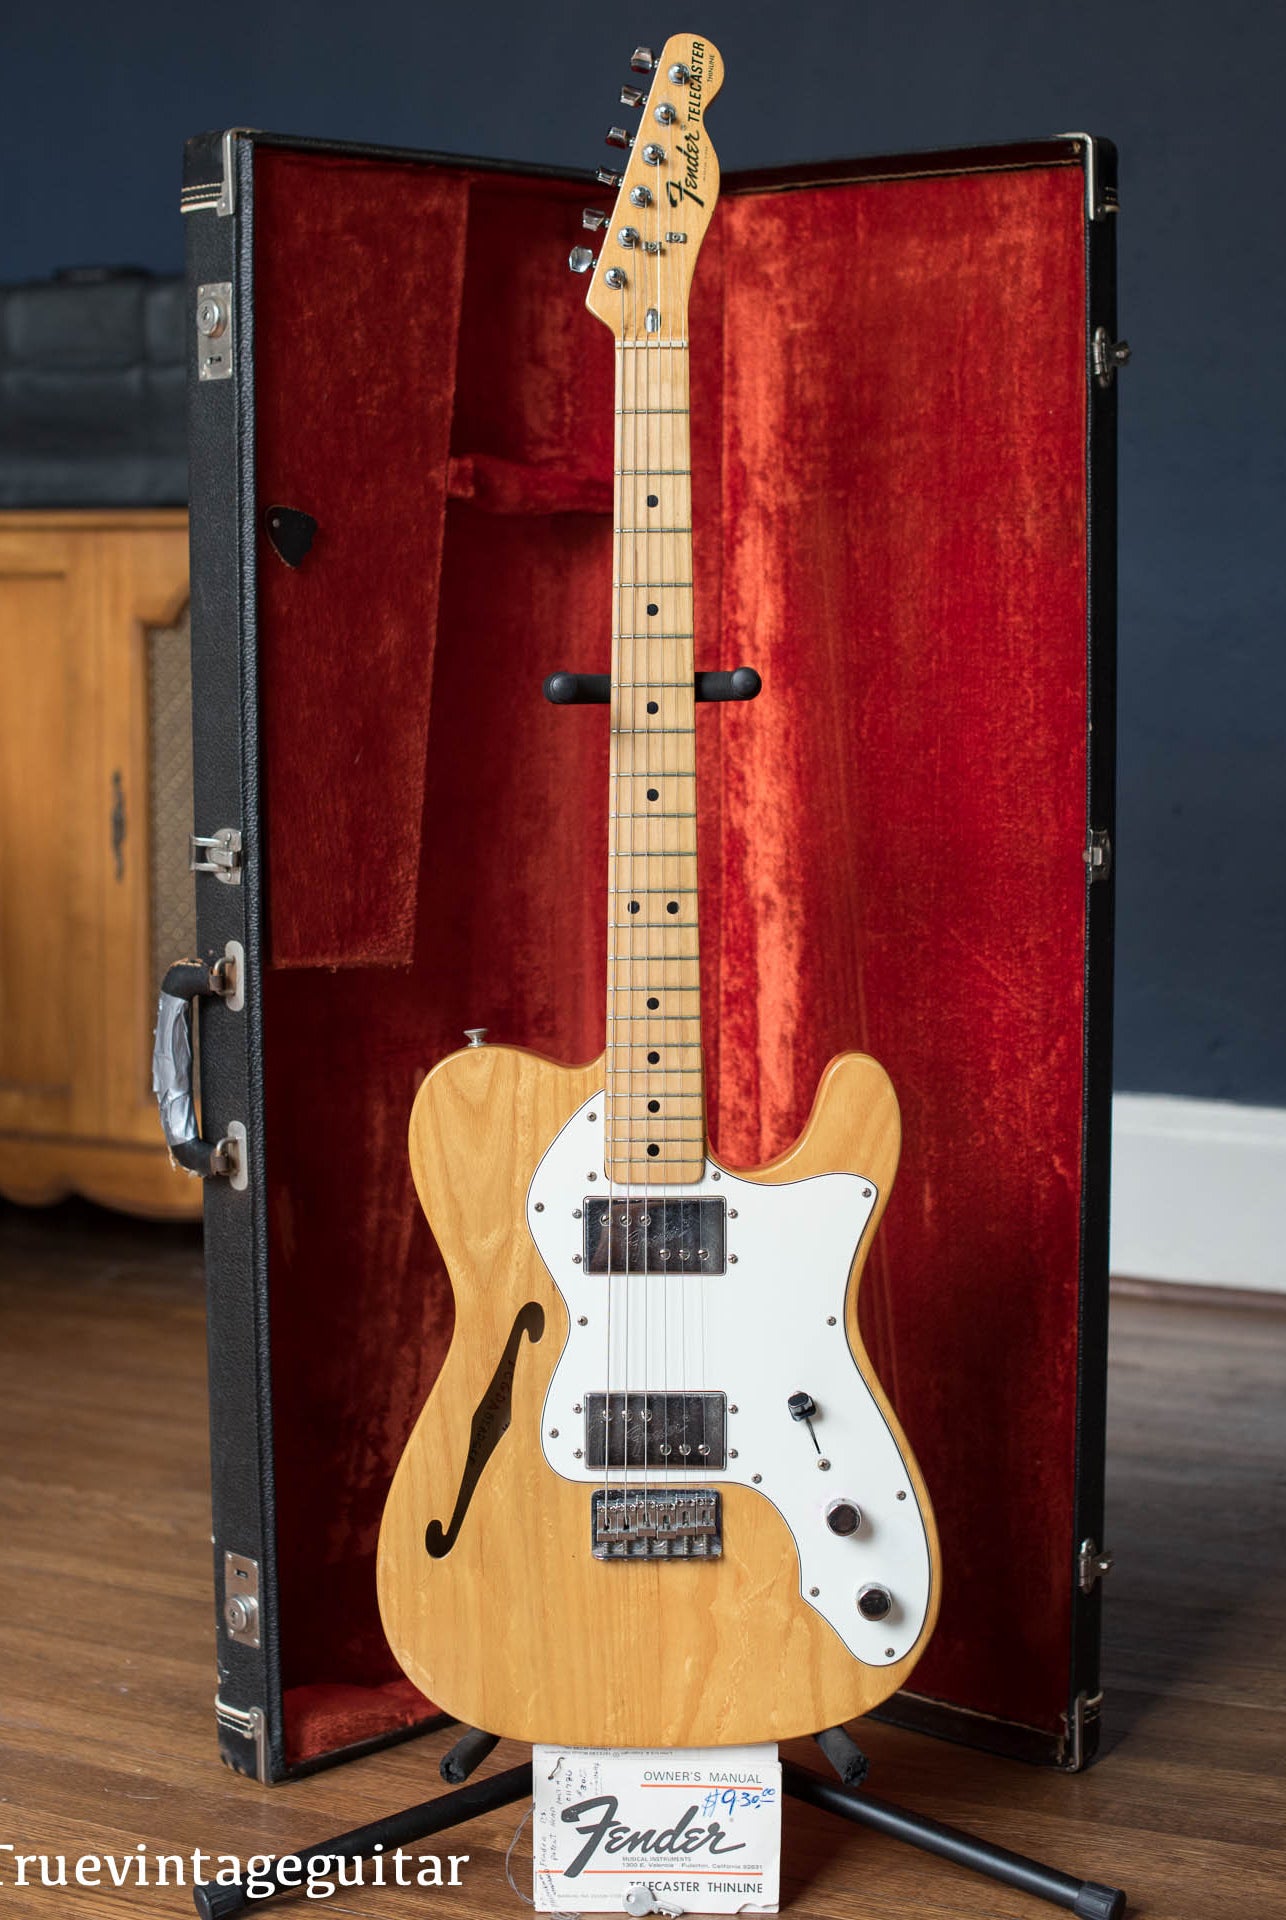 Vintage 1974 Fender Telecaster guitar